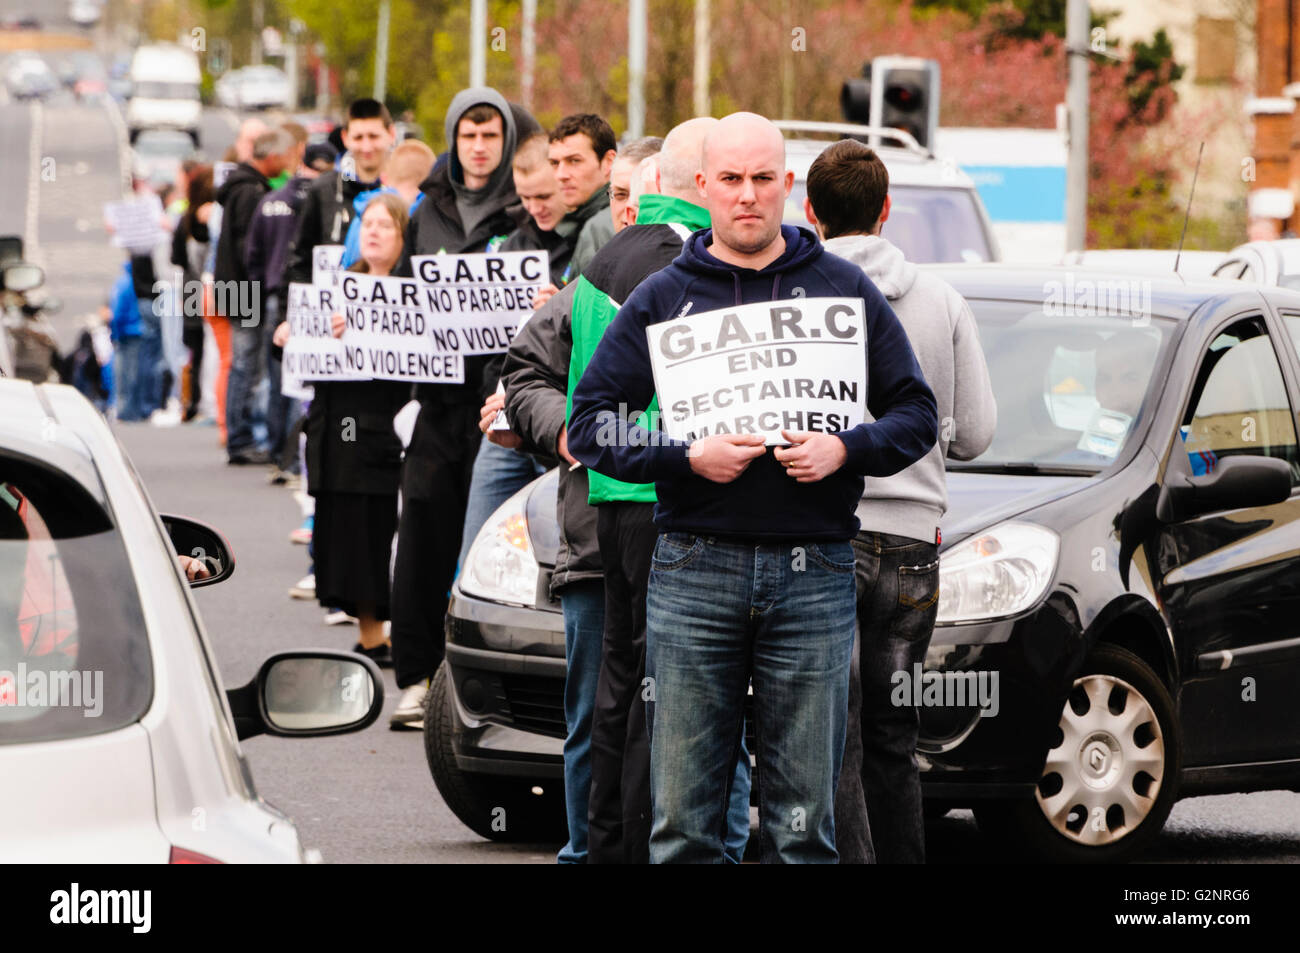 Belfast, Regno Unito/Irlanda. 07/04/2012 - Dee Fennell (anteriore) conduce il maggiore Ardoyne Comitato residenti mentre sono in attesa di una linea bianca in segno di protesta contro l'ordine arancione parate passando la zona. Foto Stock